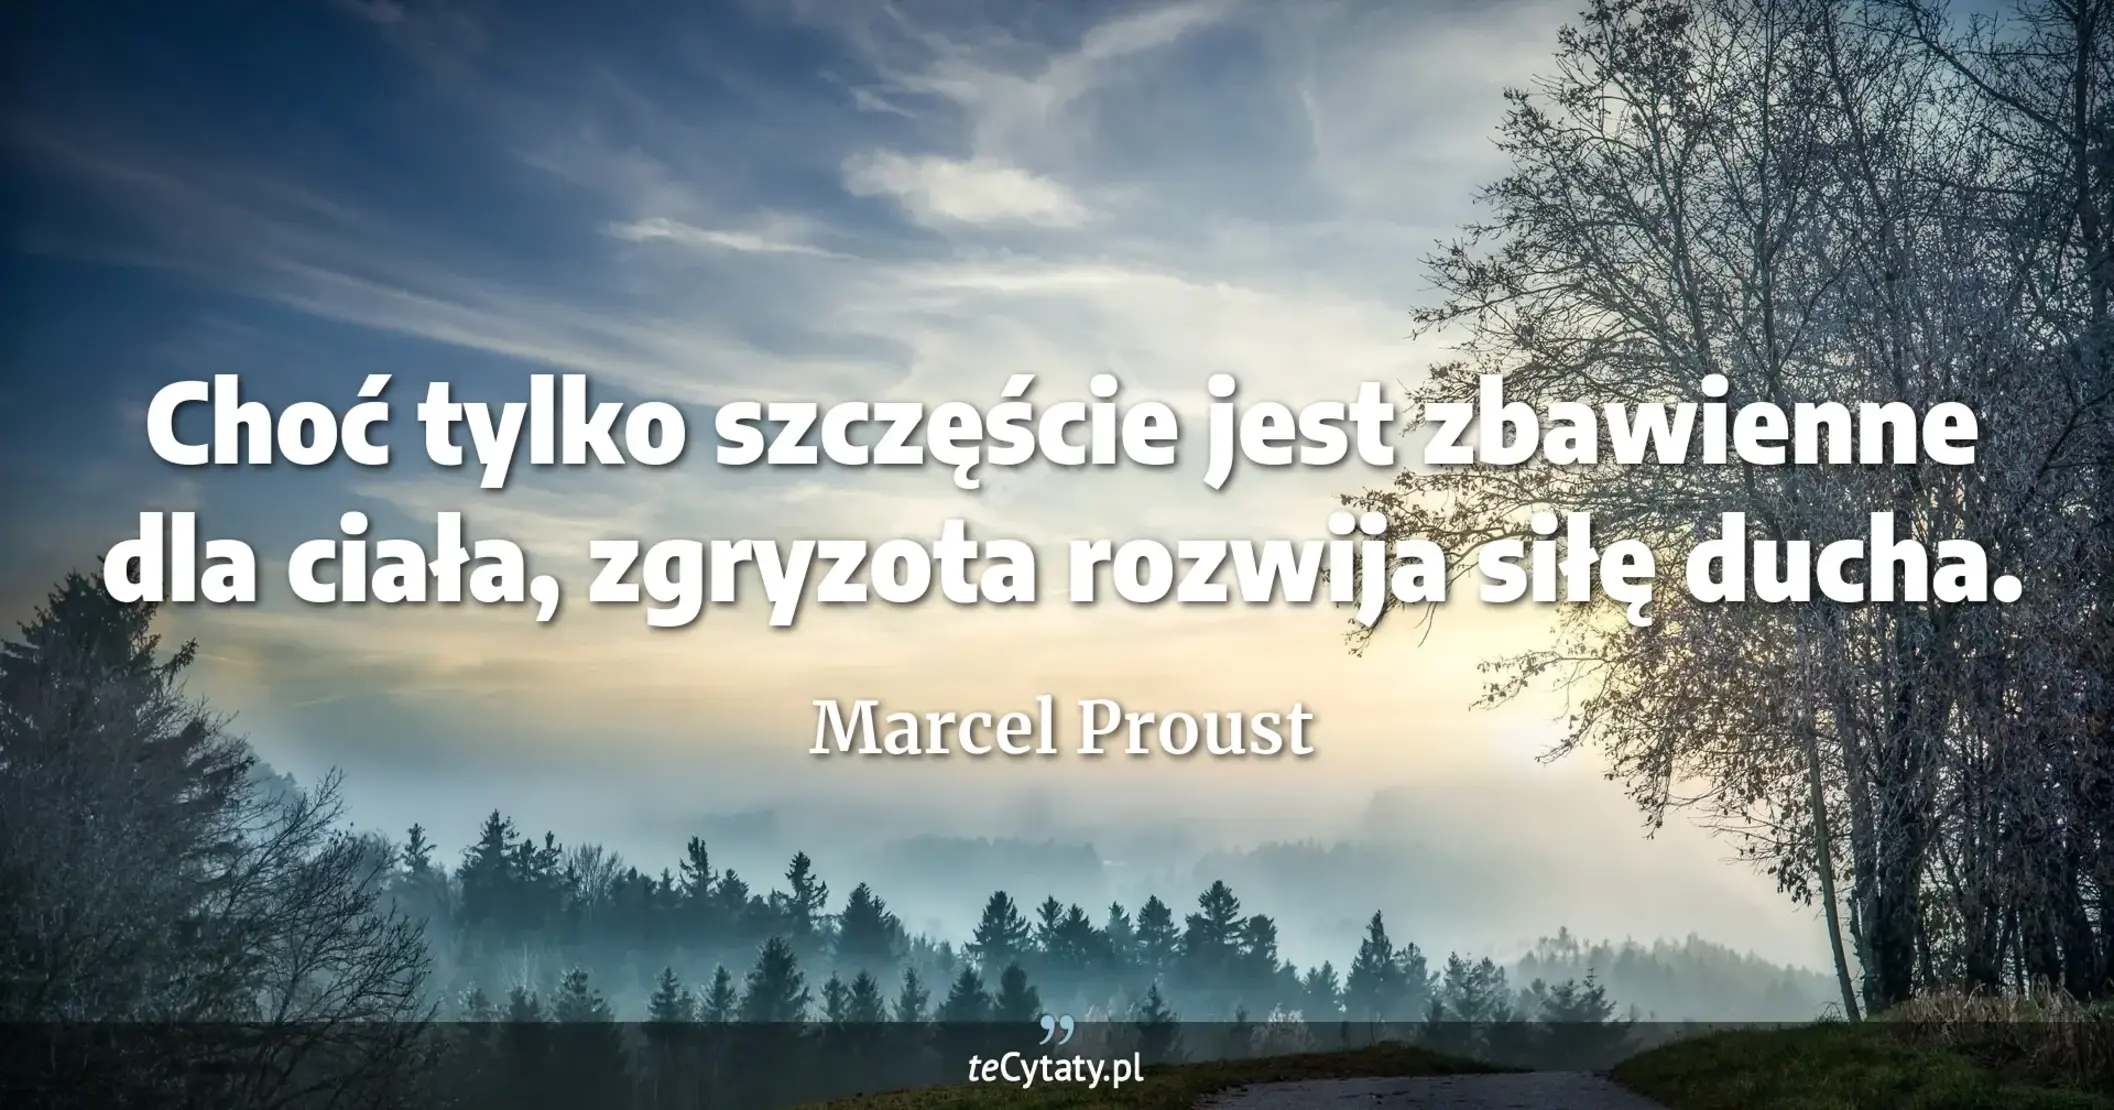 Choć tylko szczęście jest zbawienne dla ciała, zgryzota rozwija siłę ducha. - Marcel Proust